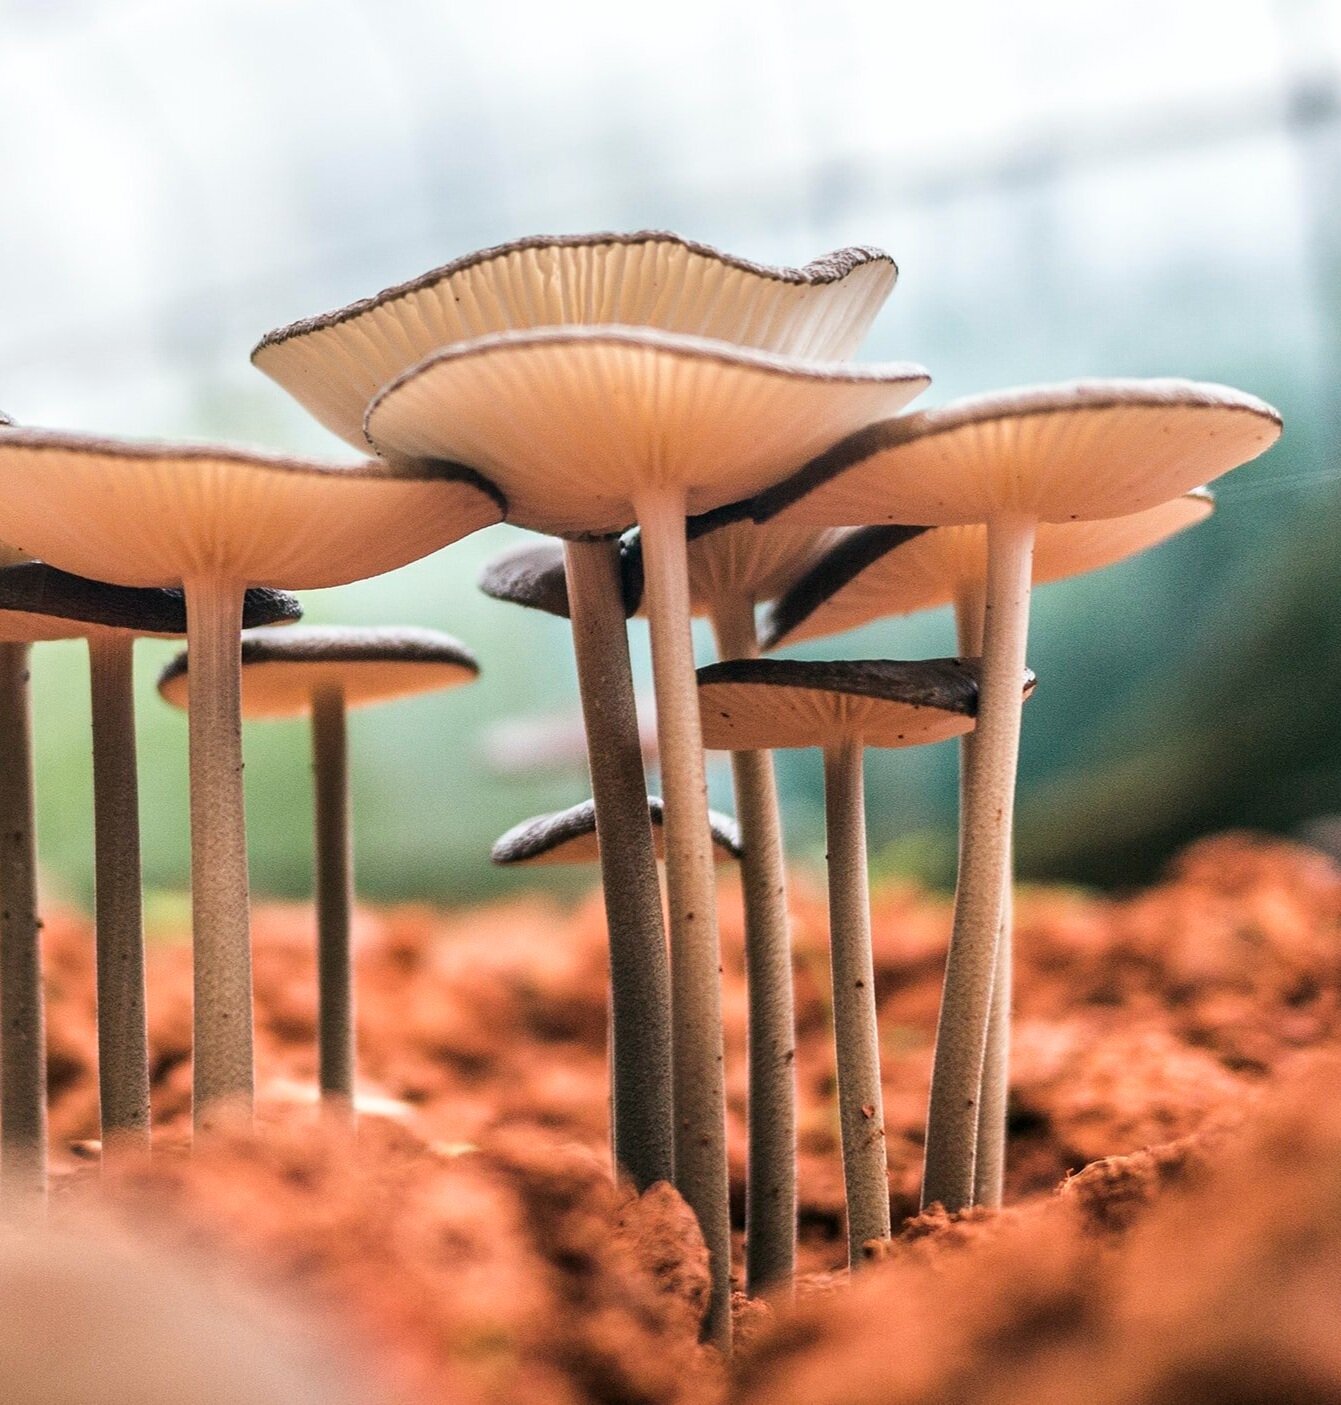 The Science of Mushroom Anatomy: Mycelium & the Fruitbody